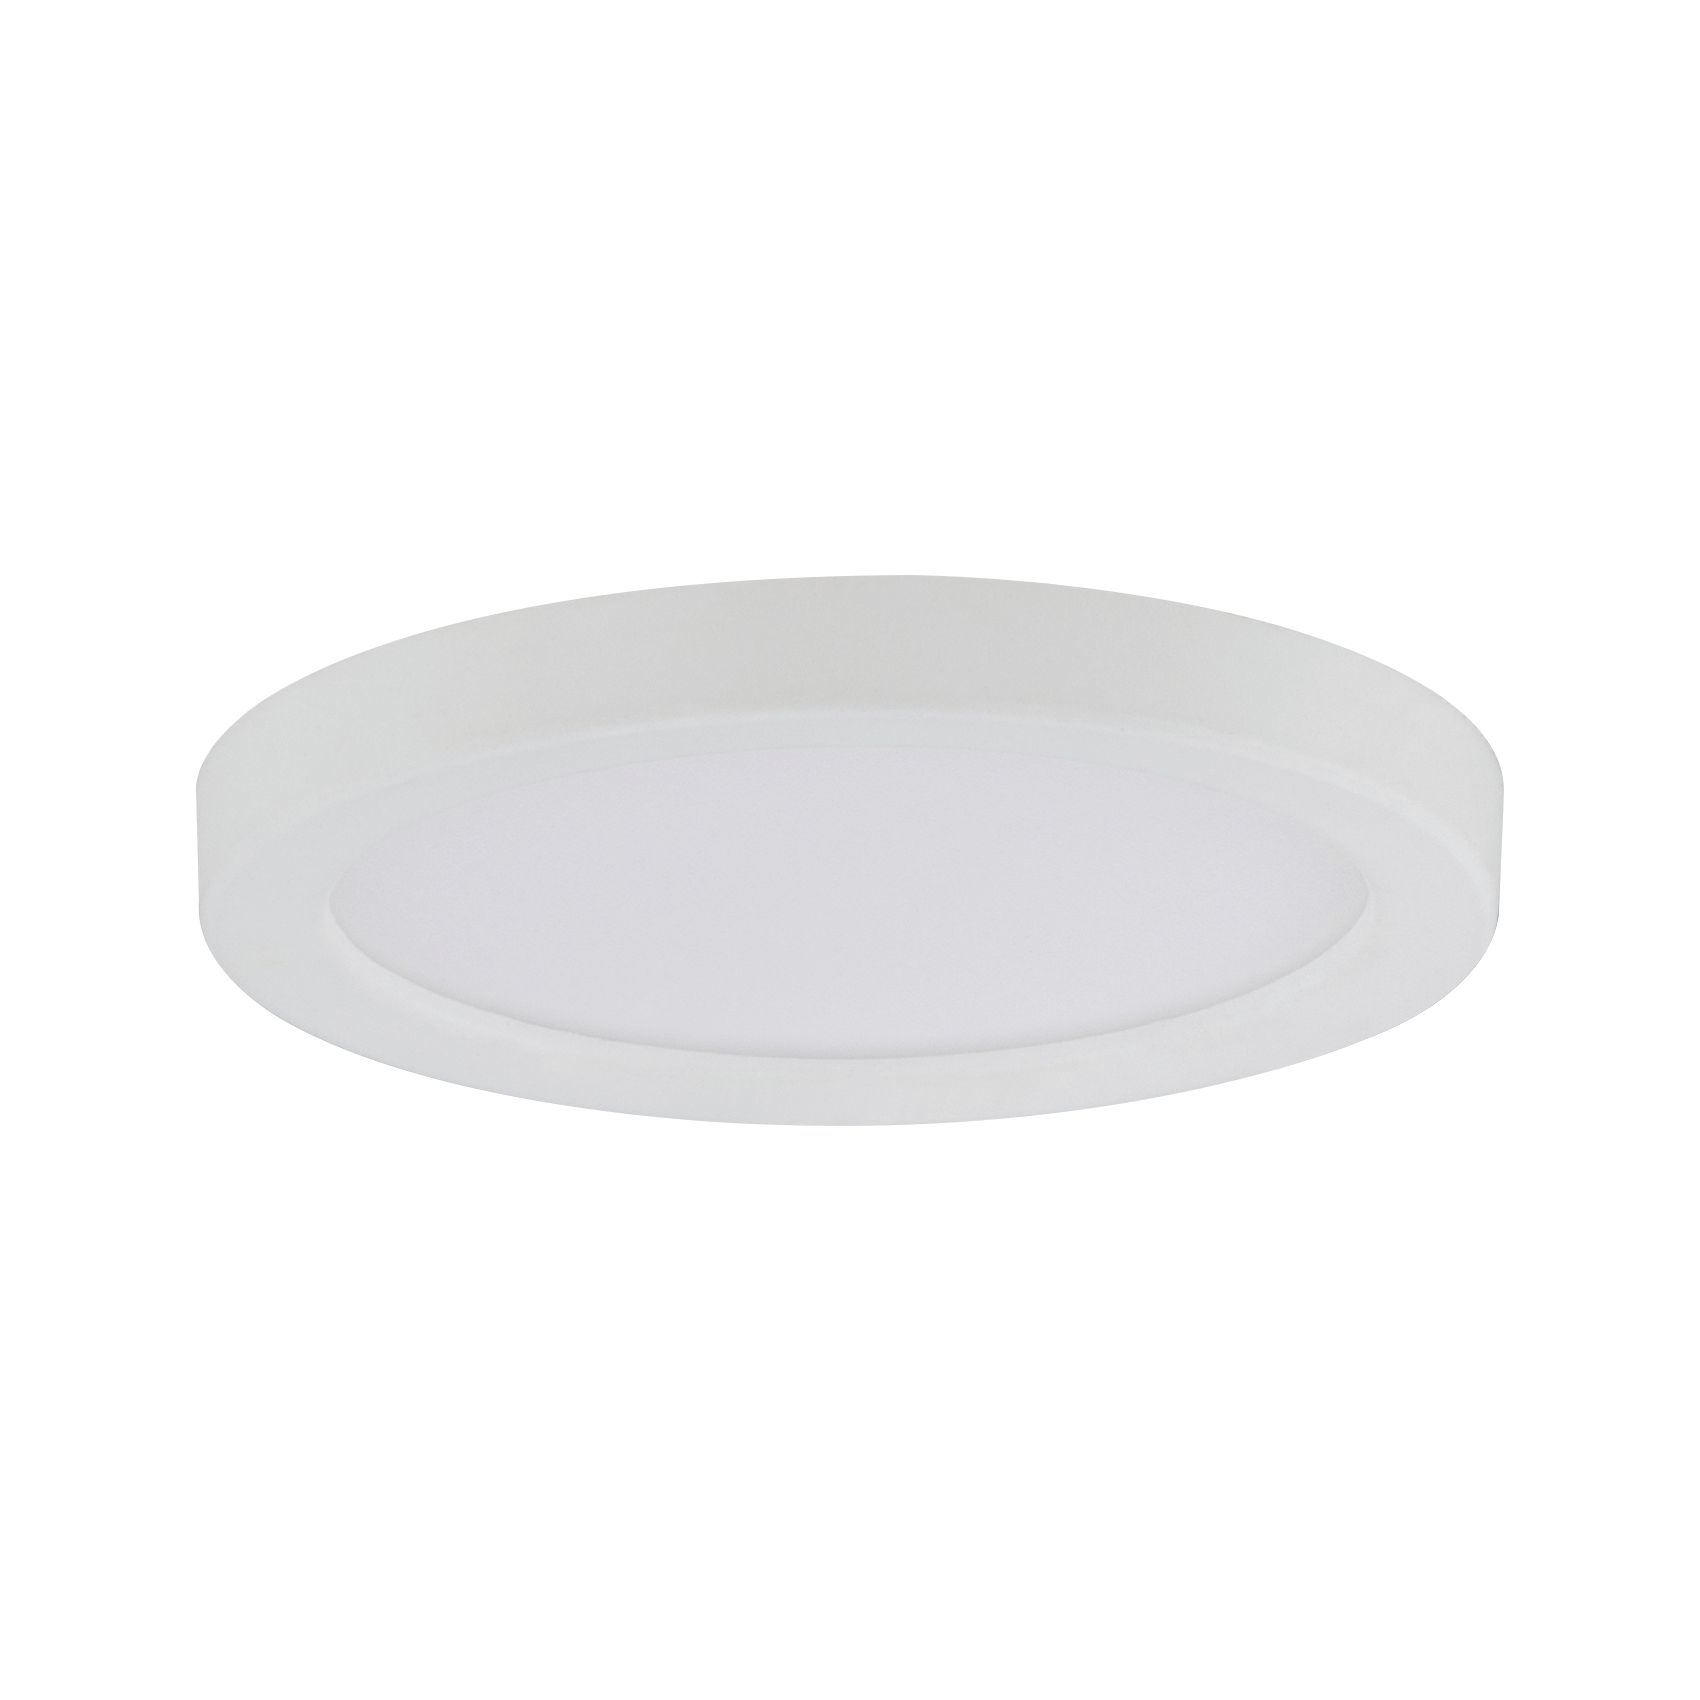 LED-PANEEL 92945  - Weiß, Basics, Kunststoff (8cm) - Paulmann